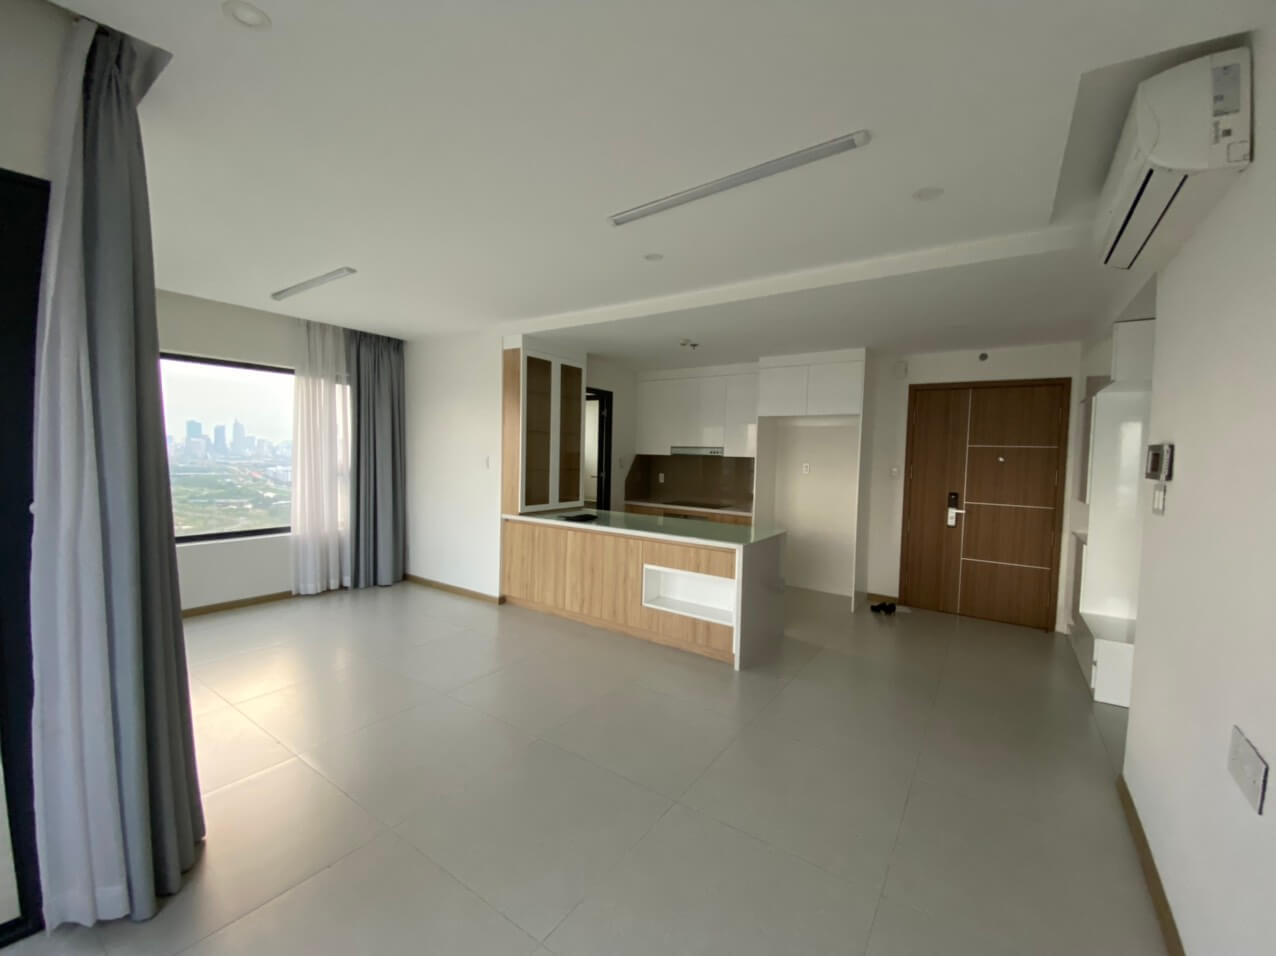 Bán căn hộ New City Tầng 23, 111 m2 nội thất cơ bản nhà mới 100%.